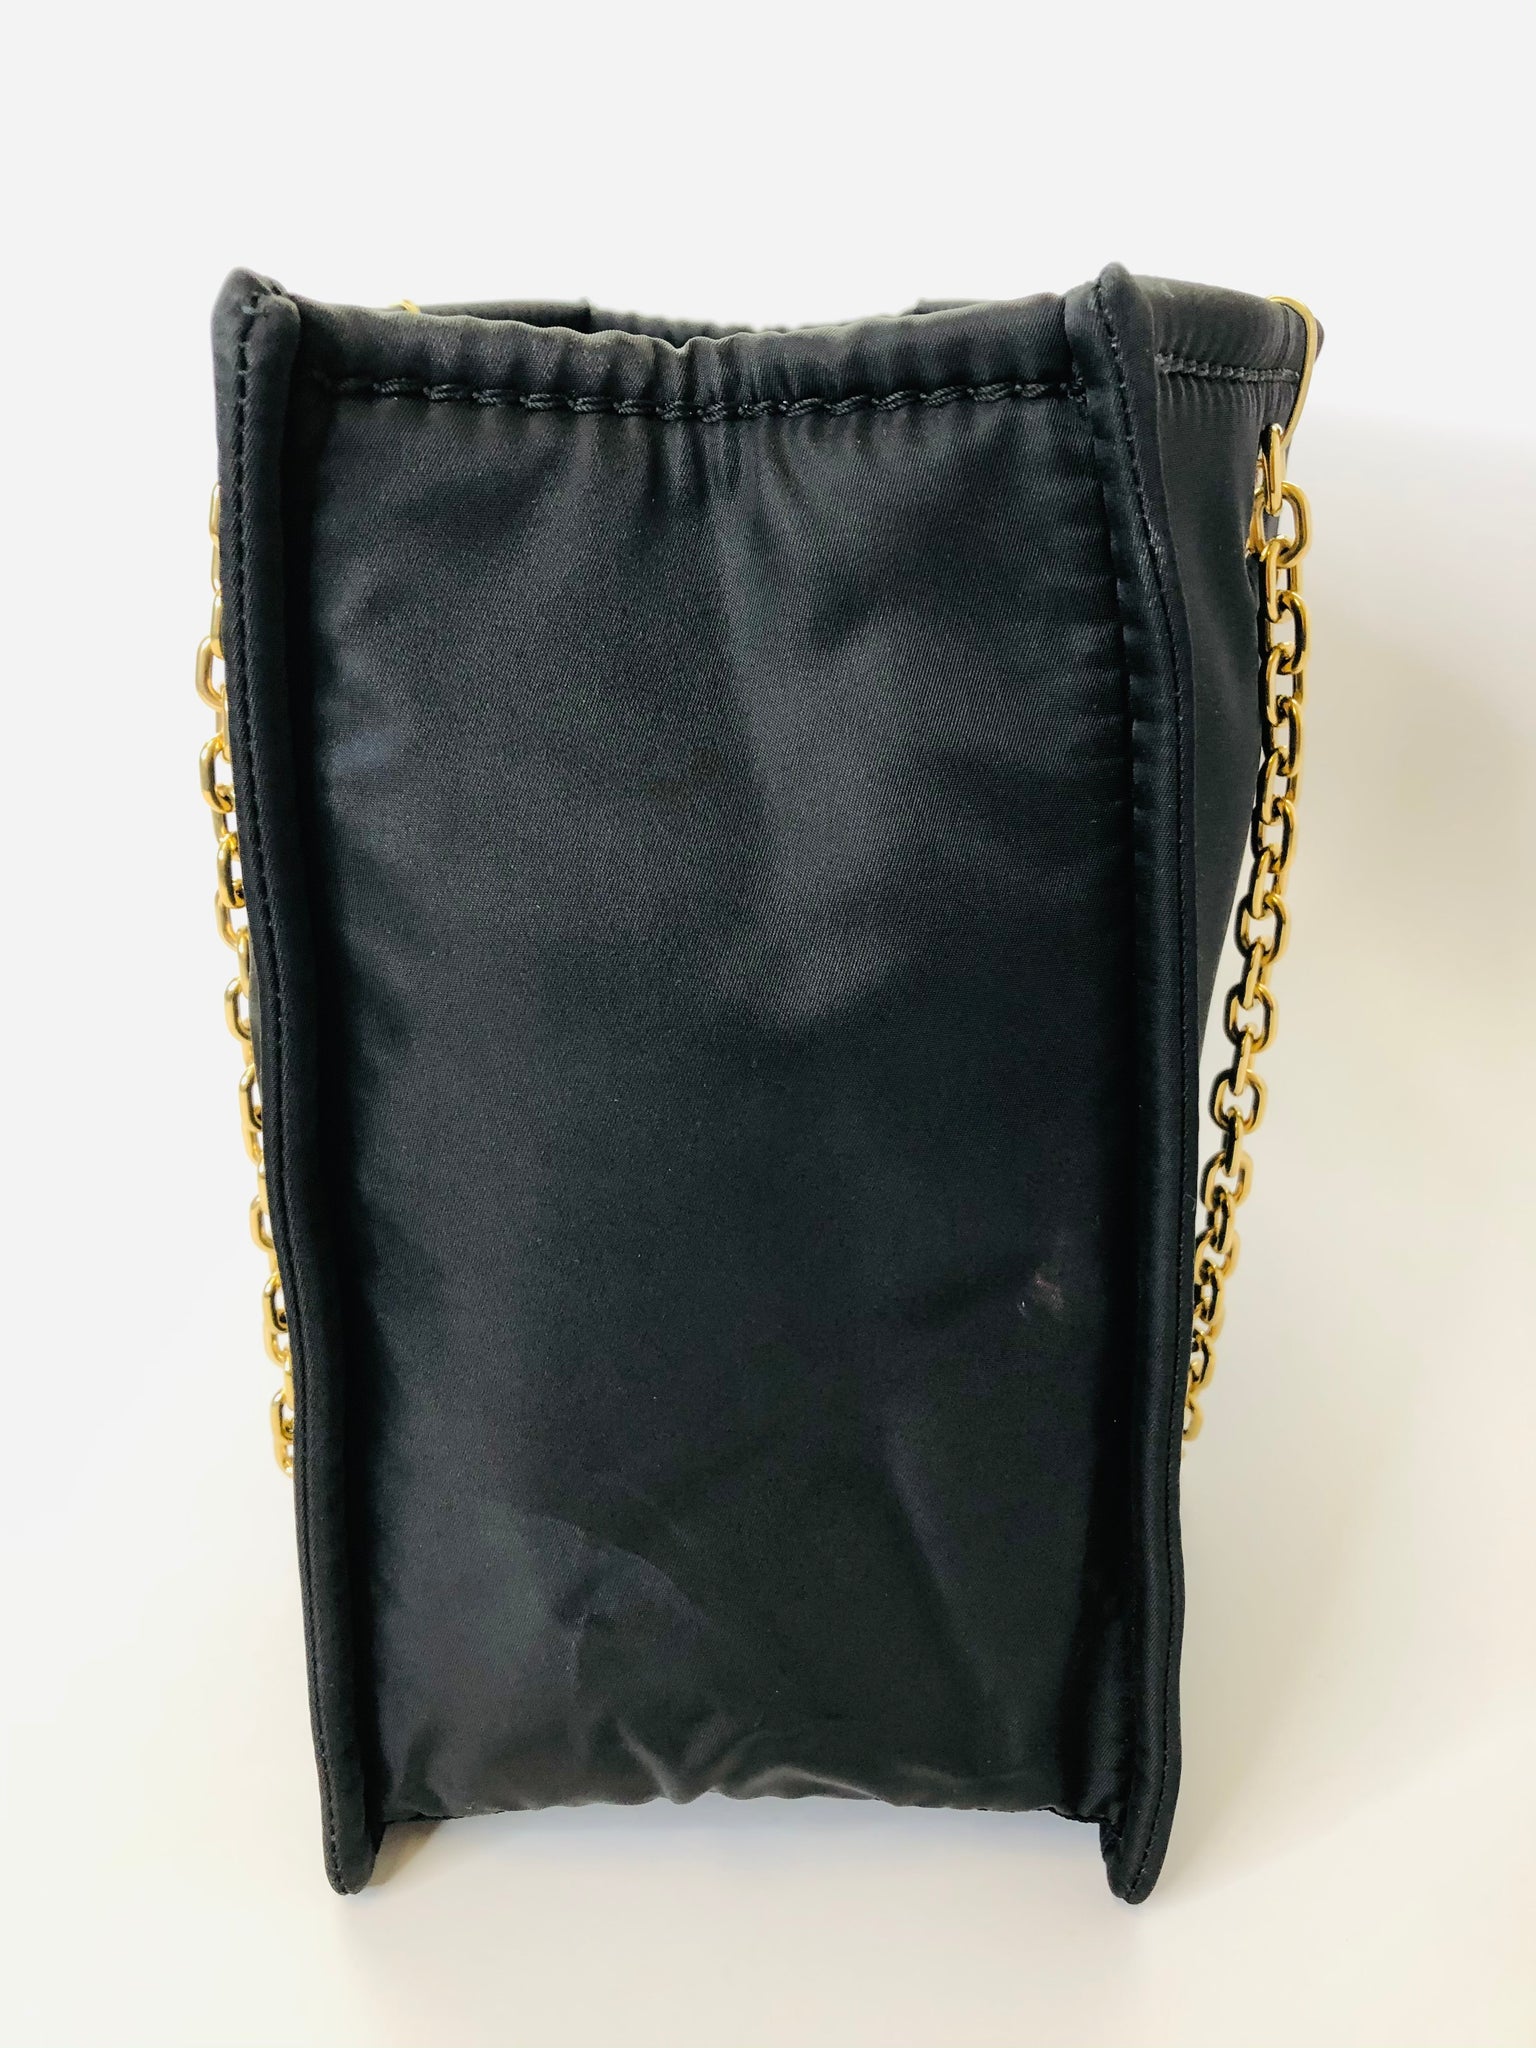 BLACK SHOULDER BAG WITH GOLD CHAIN